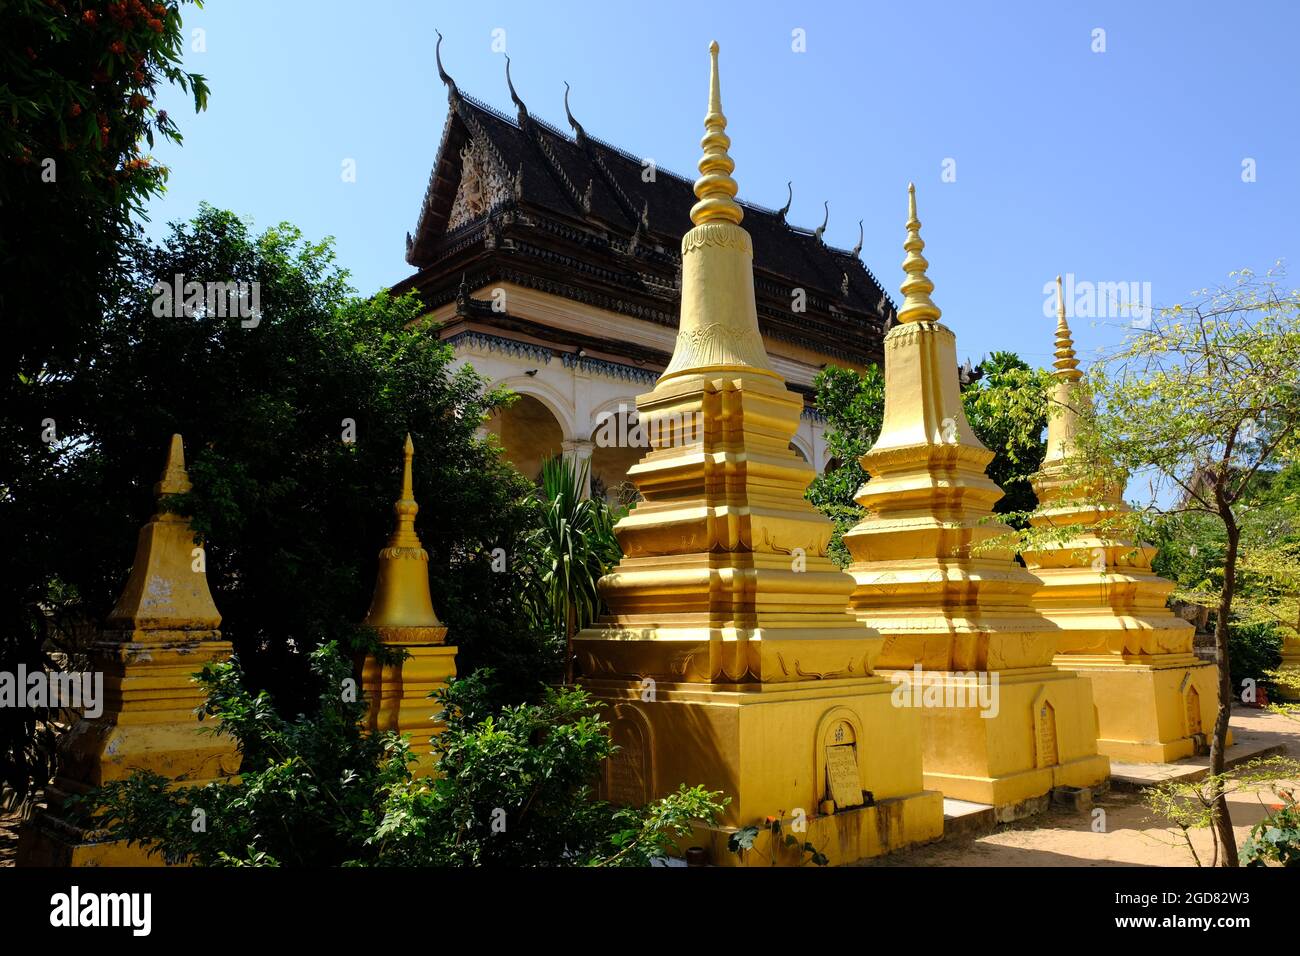 Cambodge Krong Siem Reap - Wat Bo groupe de tours dorées Stupa Banque D'Images